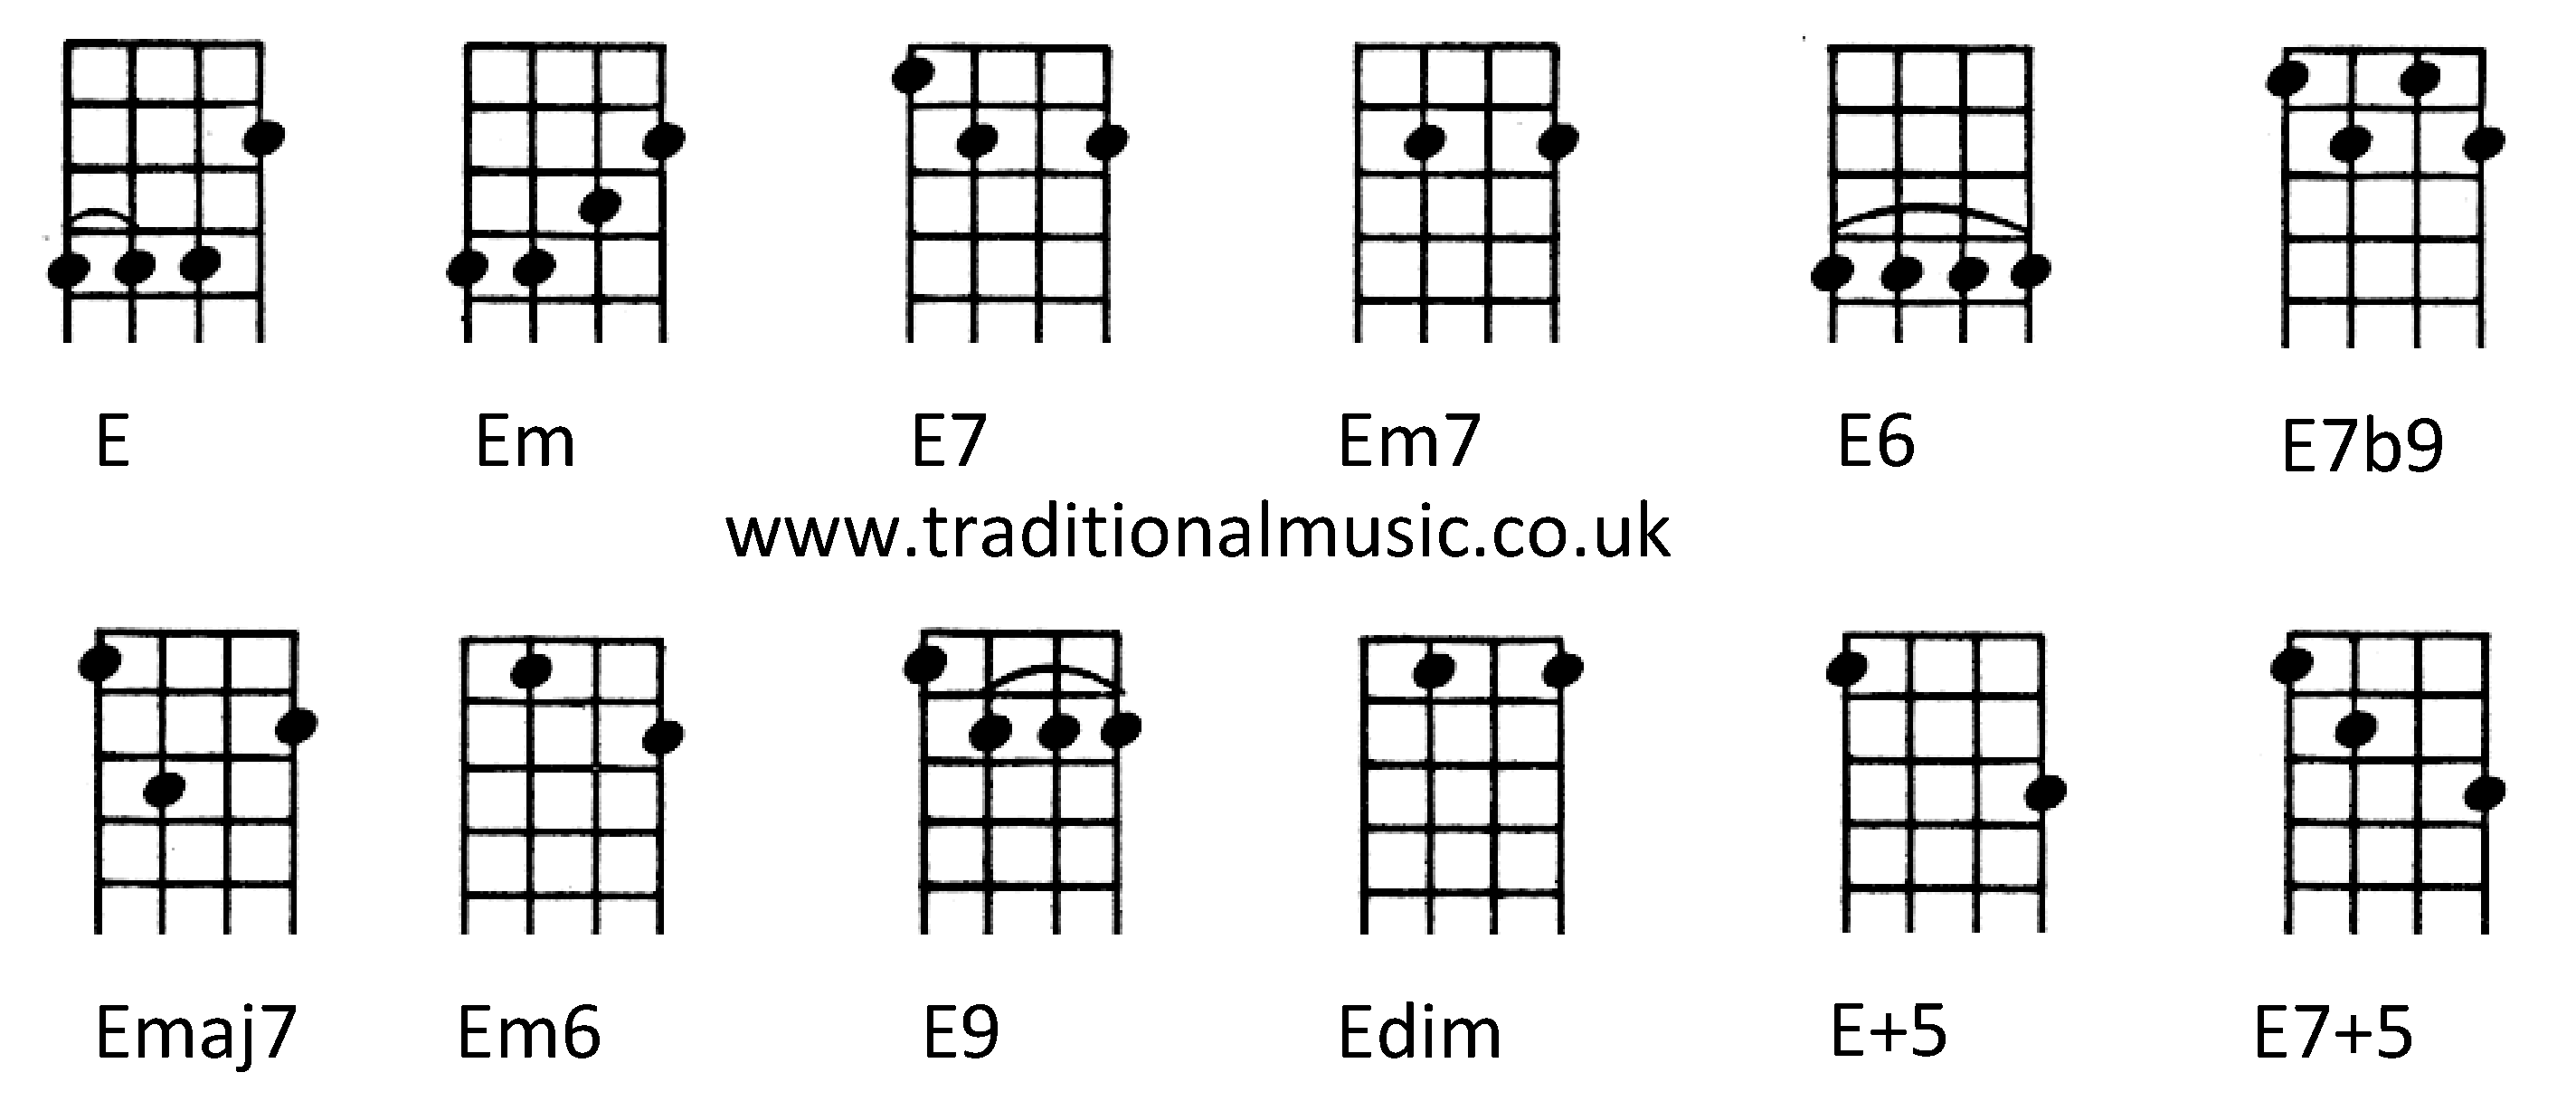 Chords for Ukulele (C tuning)E Em E7 Em7 E6 E7b9 Emaj7 Em6 E9 Edim E+5 E7+5